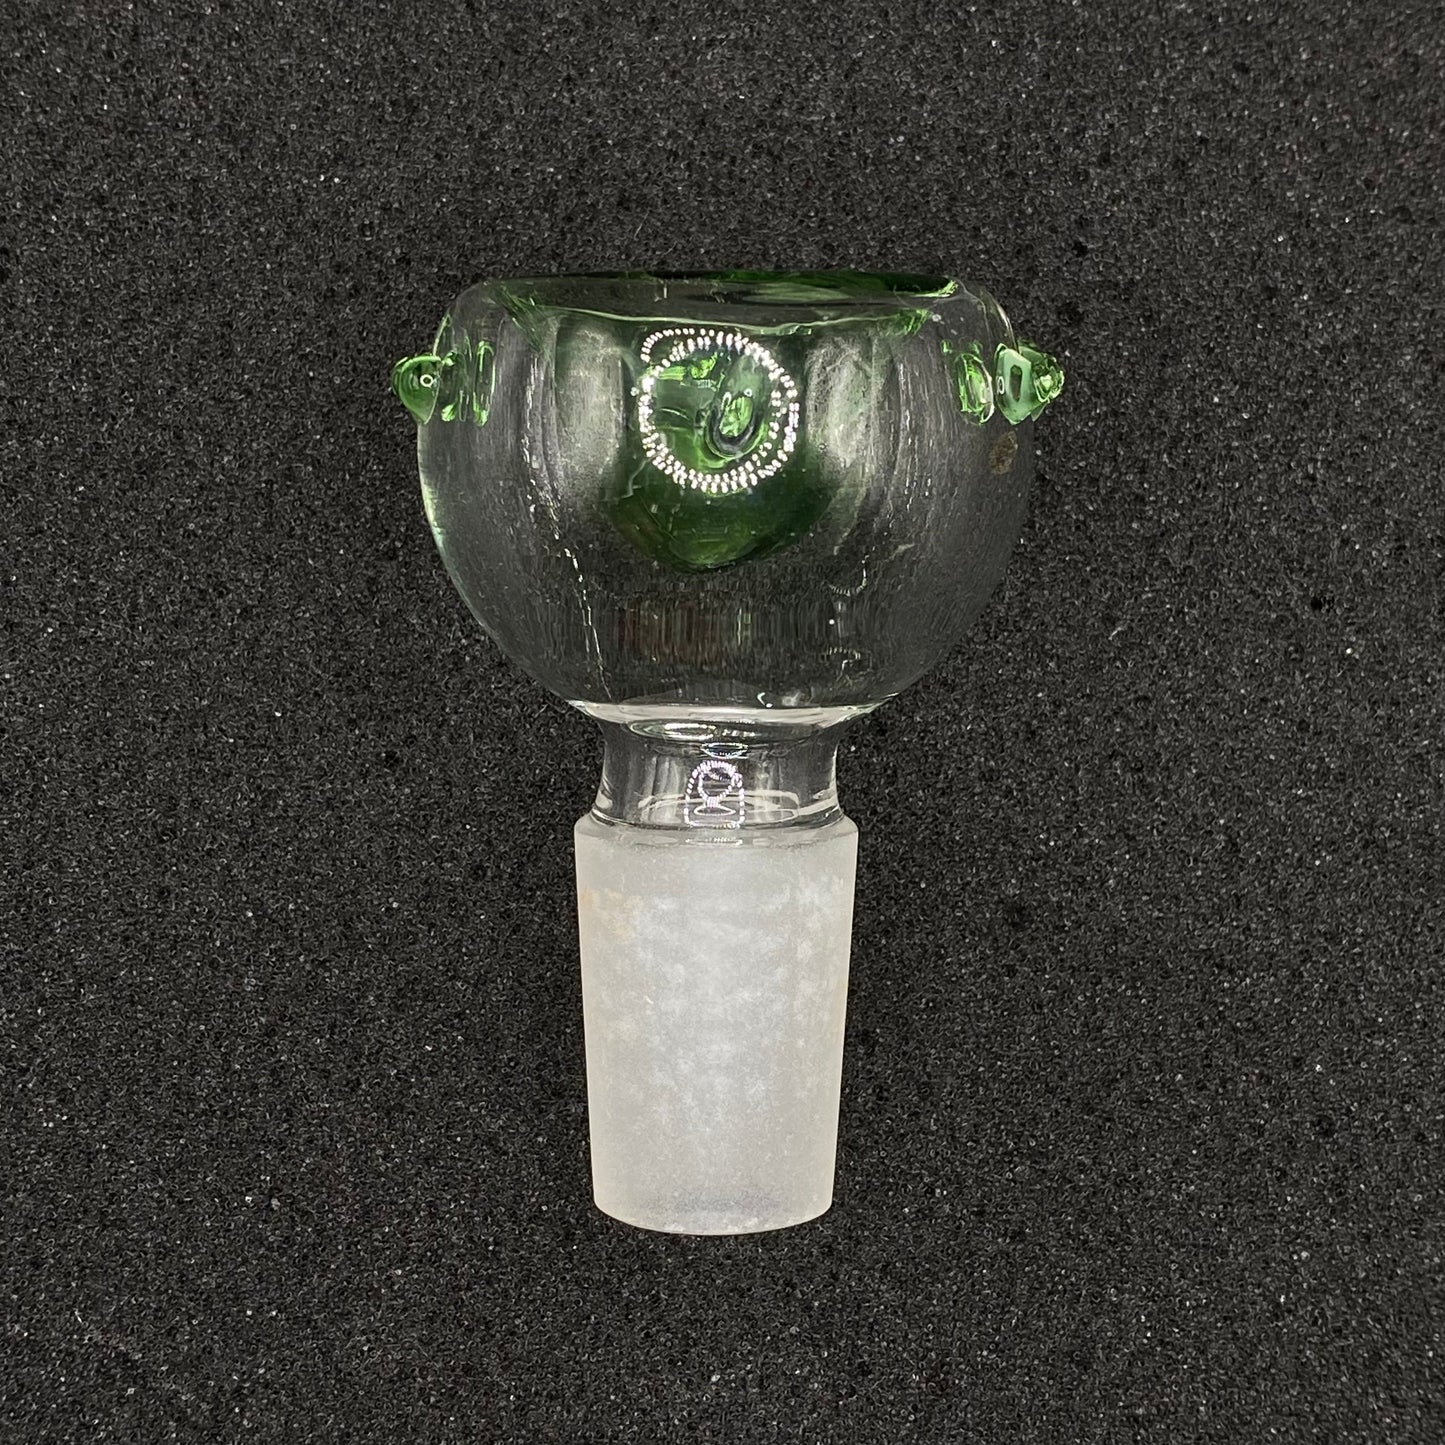 420 Glass - 18mm Shower Head Glass Bowl Slide